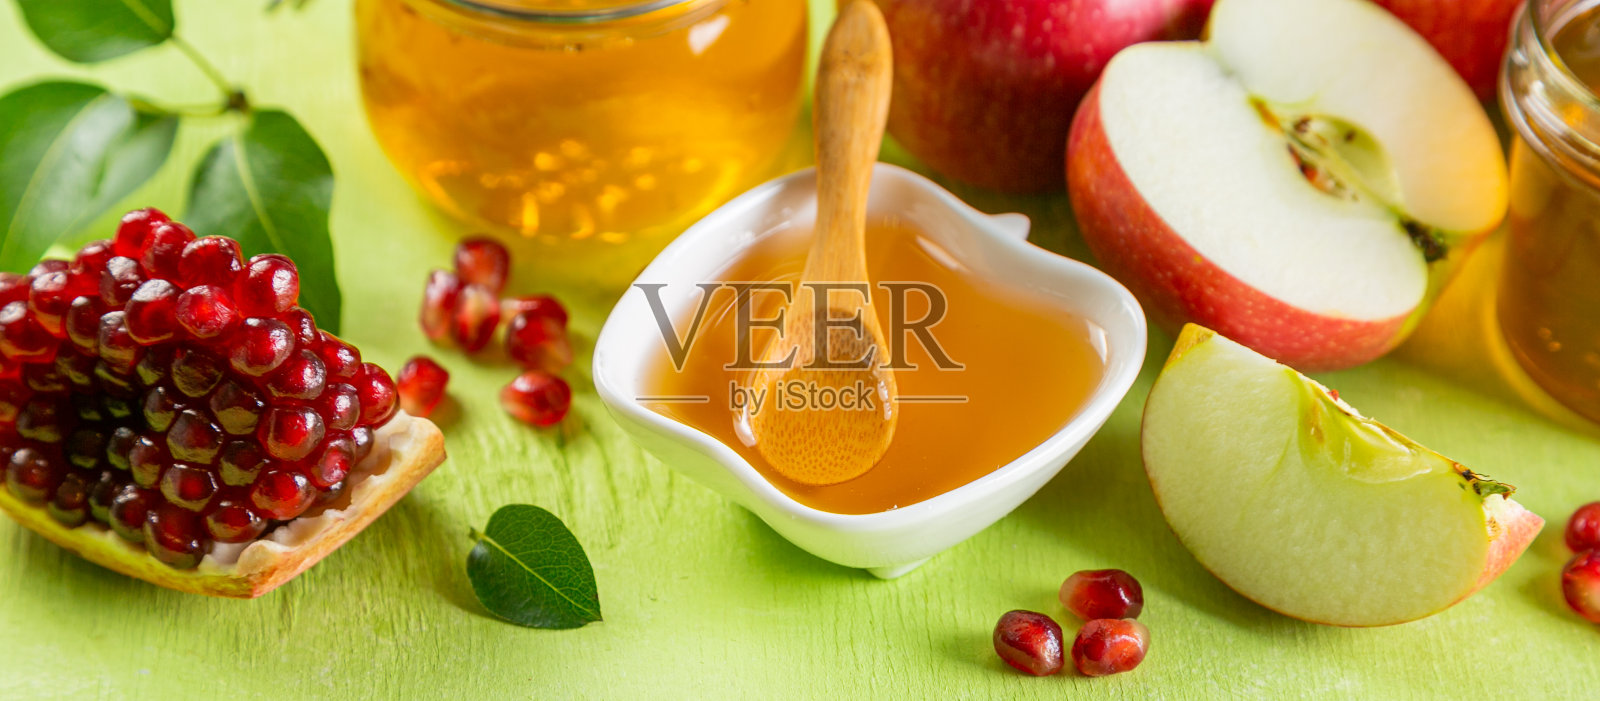 犹太新年的概念——蜂蜜、苹果、石榴等象征照片摄影图片